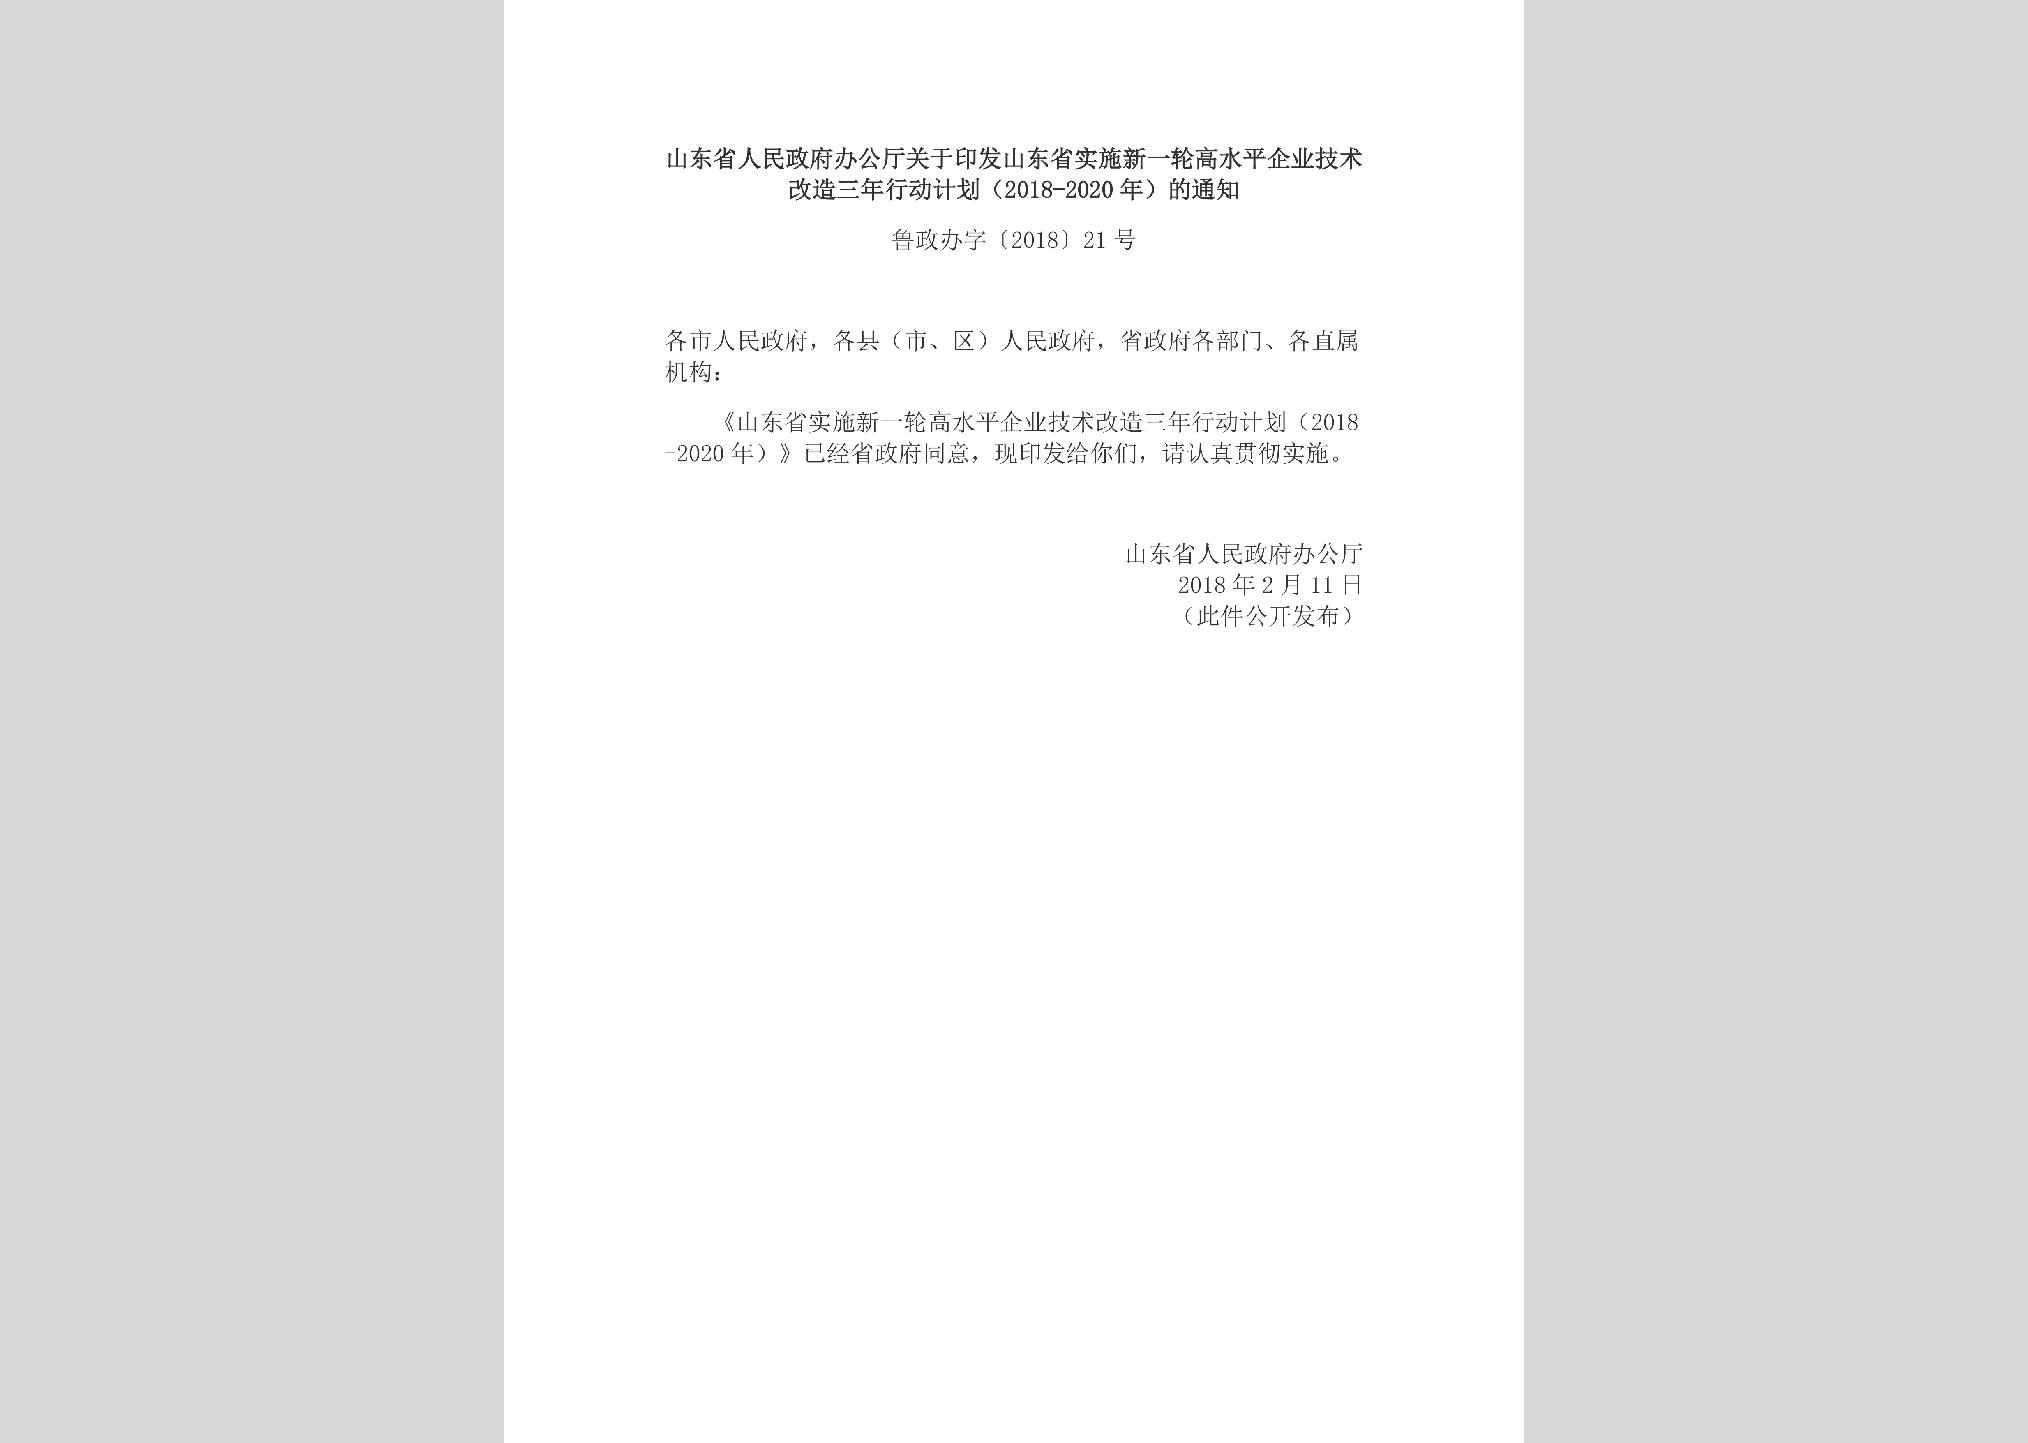 鲁政办字[2018]21号：山东省人民政府办公厅关于印发山东省实施新一轮高水平企业技术改造三年行动计划（2018-2020年）的通知